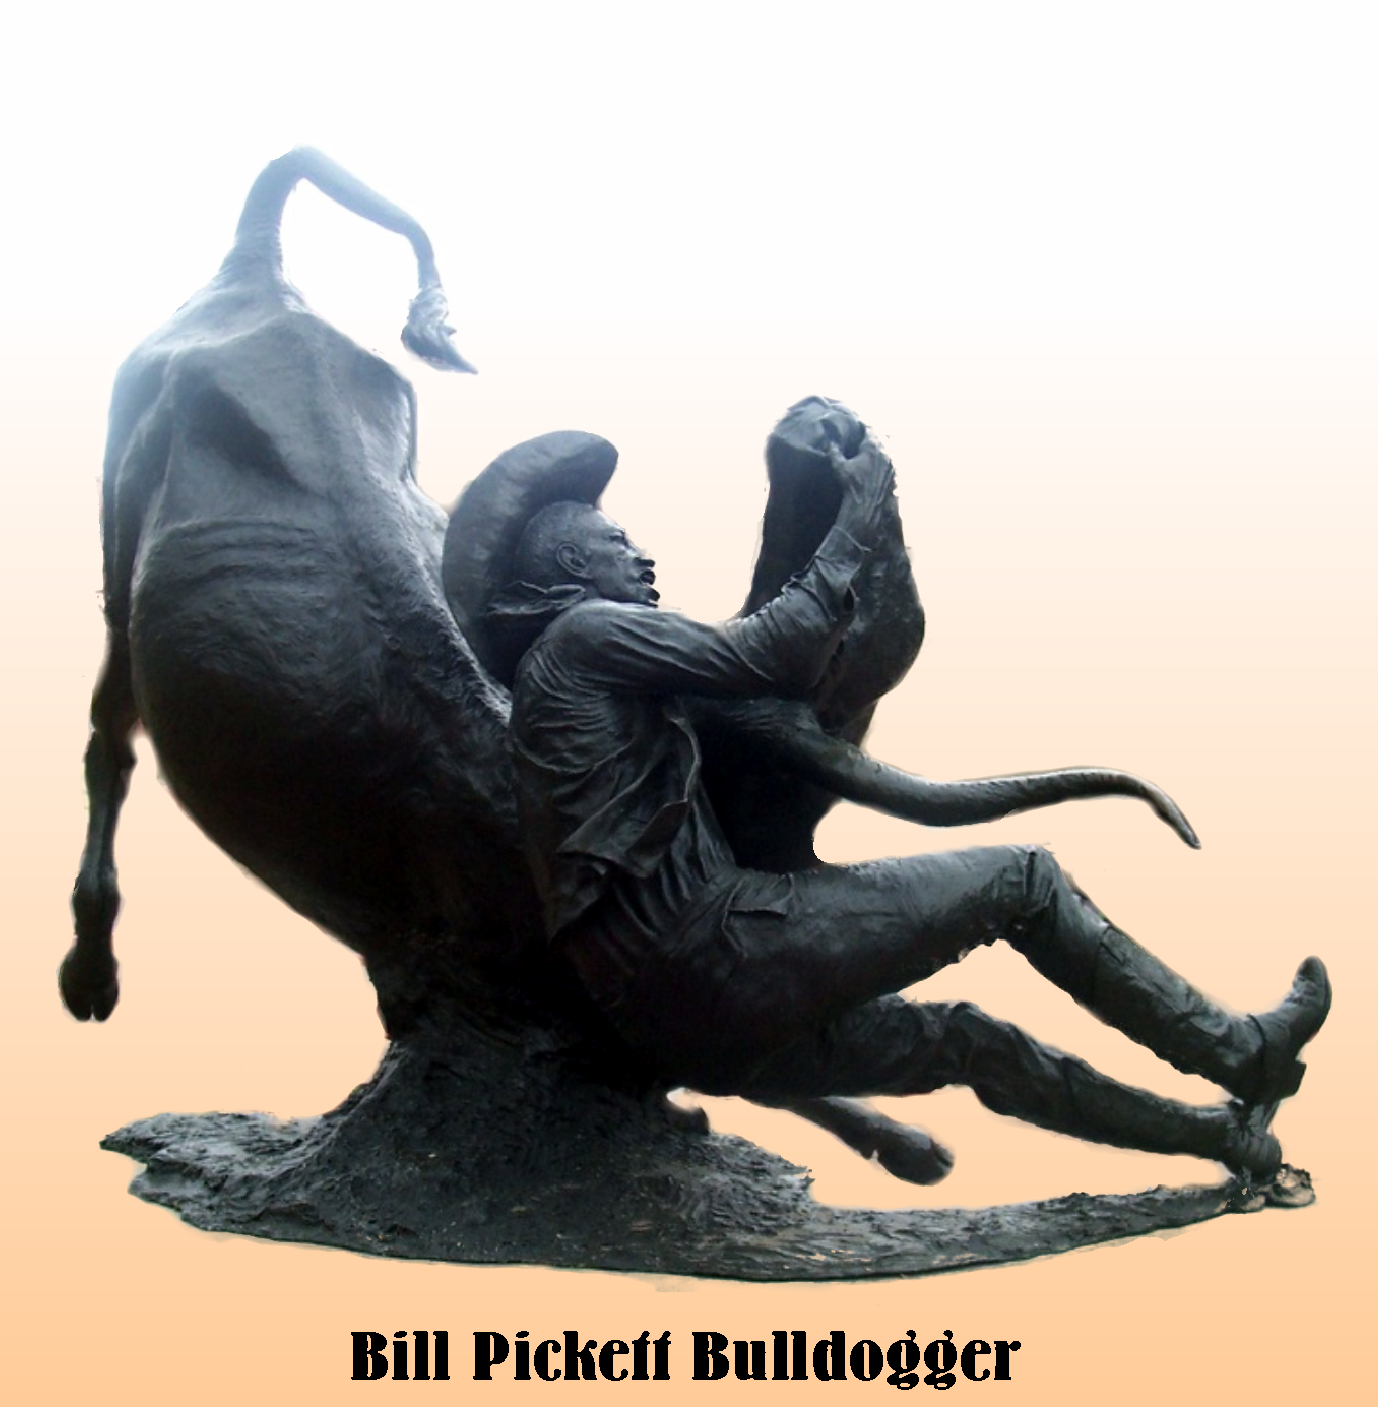 Bill Pickett bulldogger